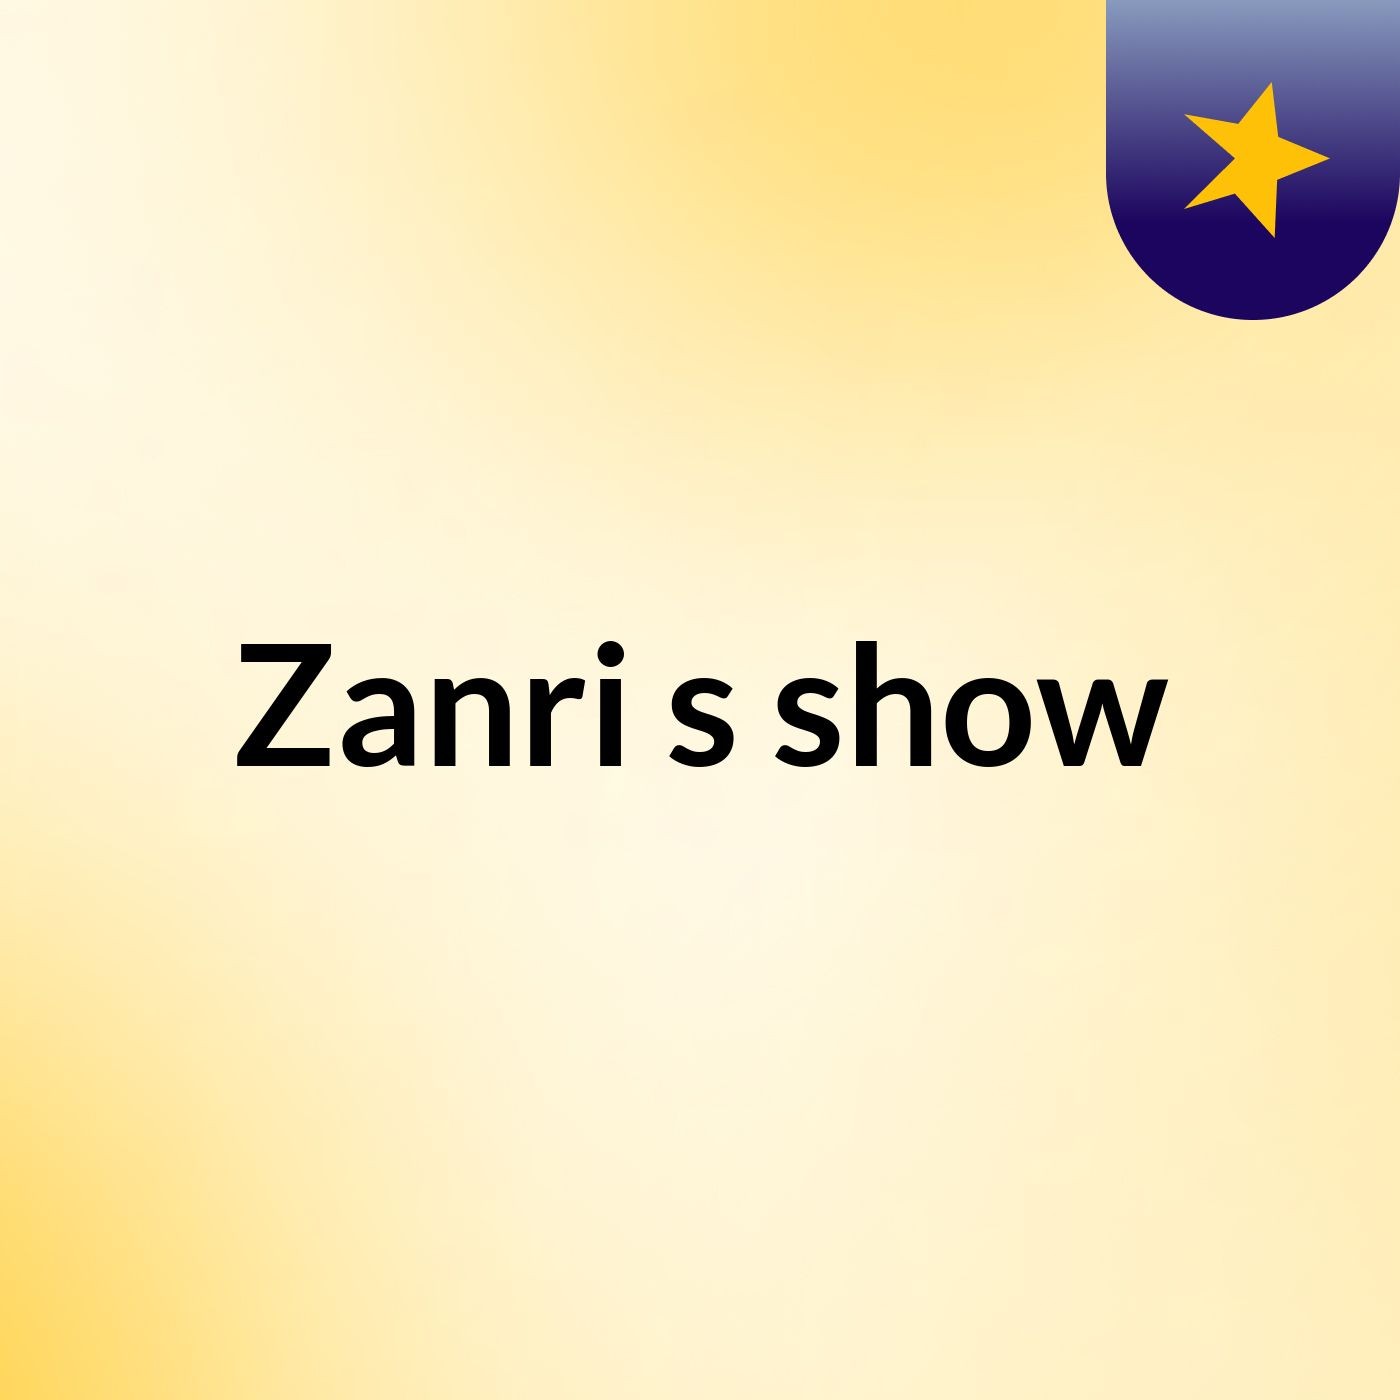 Zanri's show